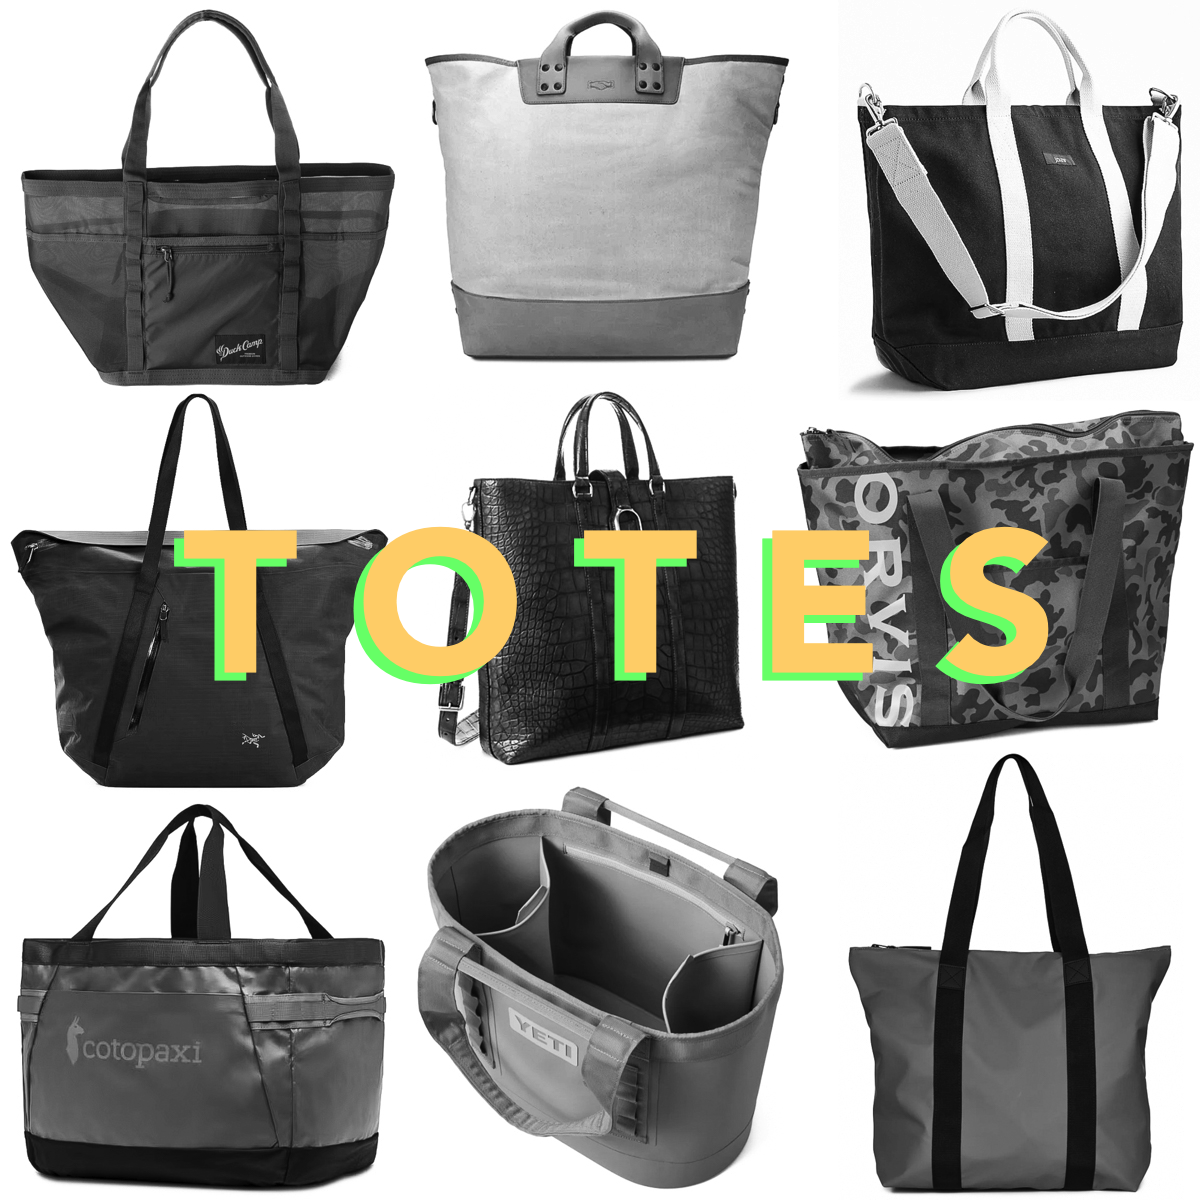 Camino Carryall Tote Bag  Yeti bag, Utility tote bag, Boat bag